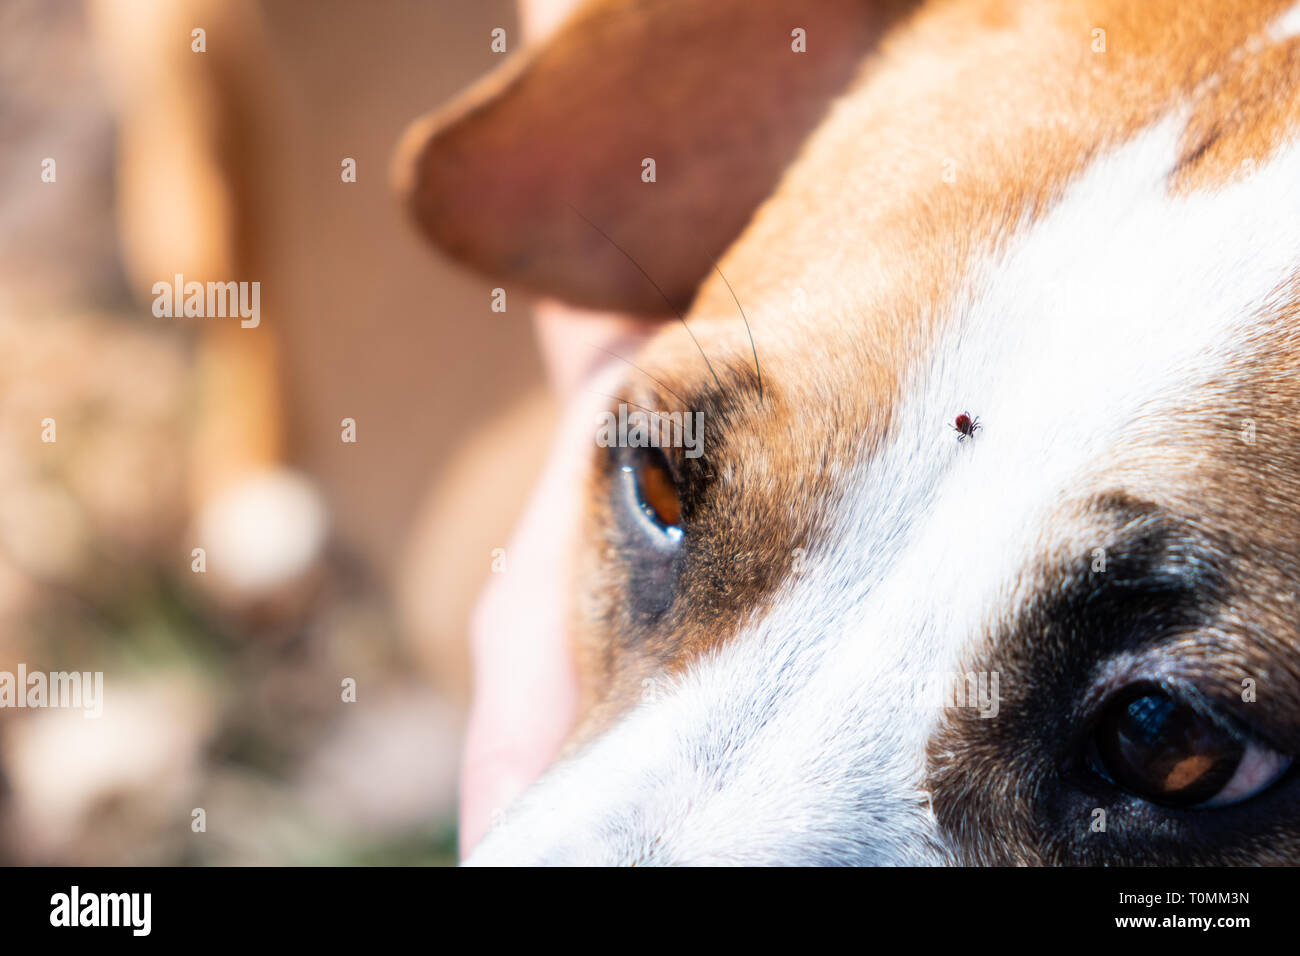 Klicken Sie auf einen Hund, eine Nahaufnahme. Milbe kriechen auf den Kopf eines inländischen Haustier Spaziergang im Freien Stockfoto